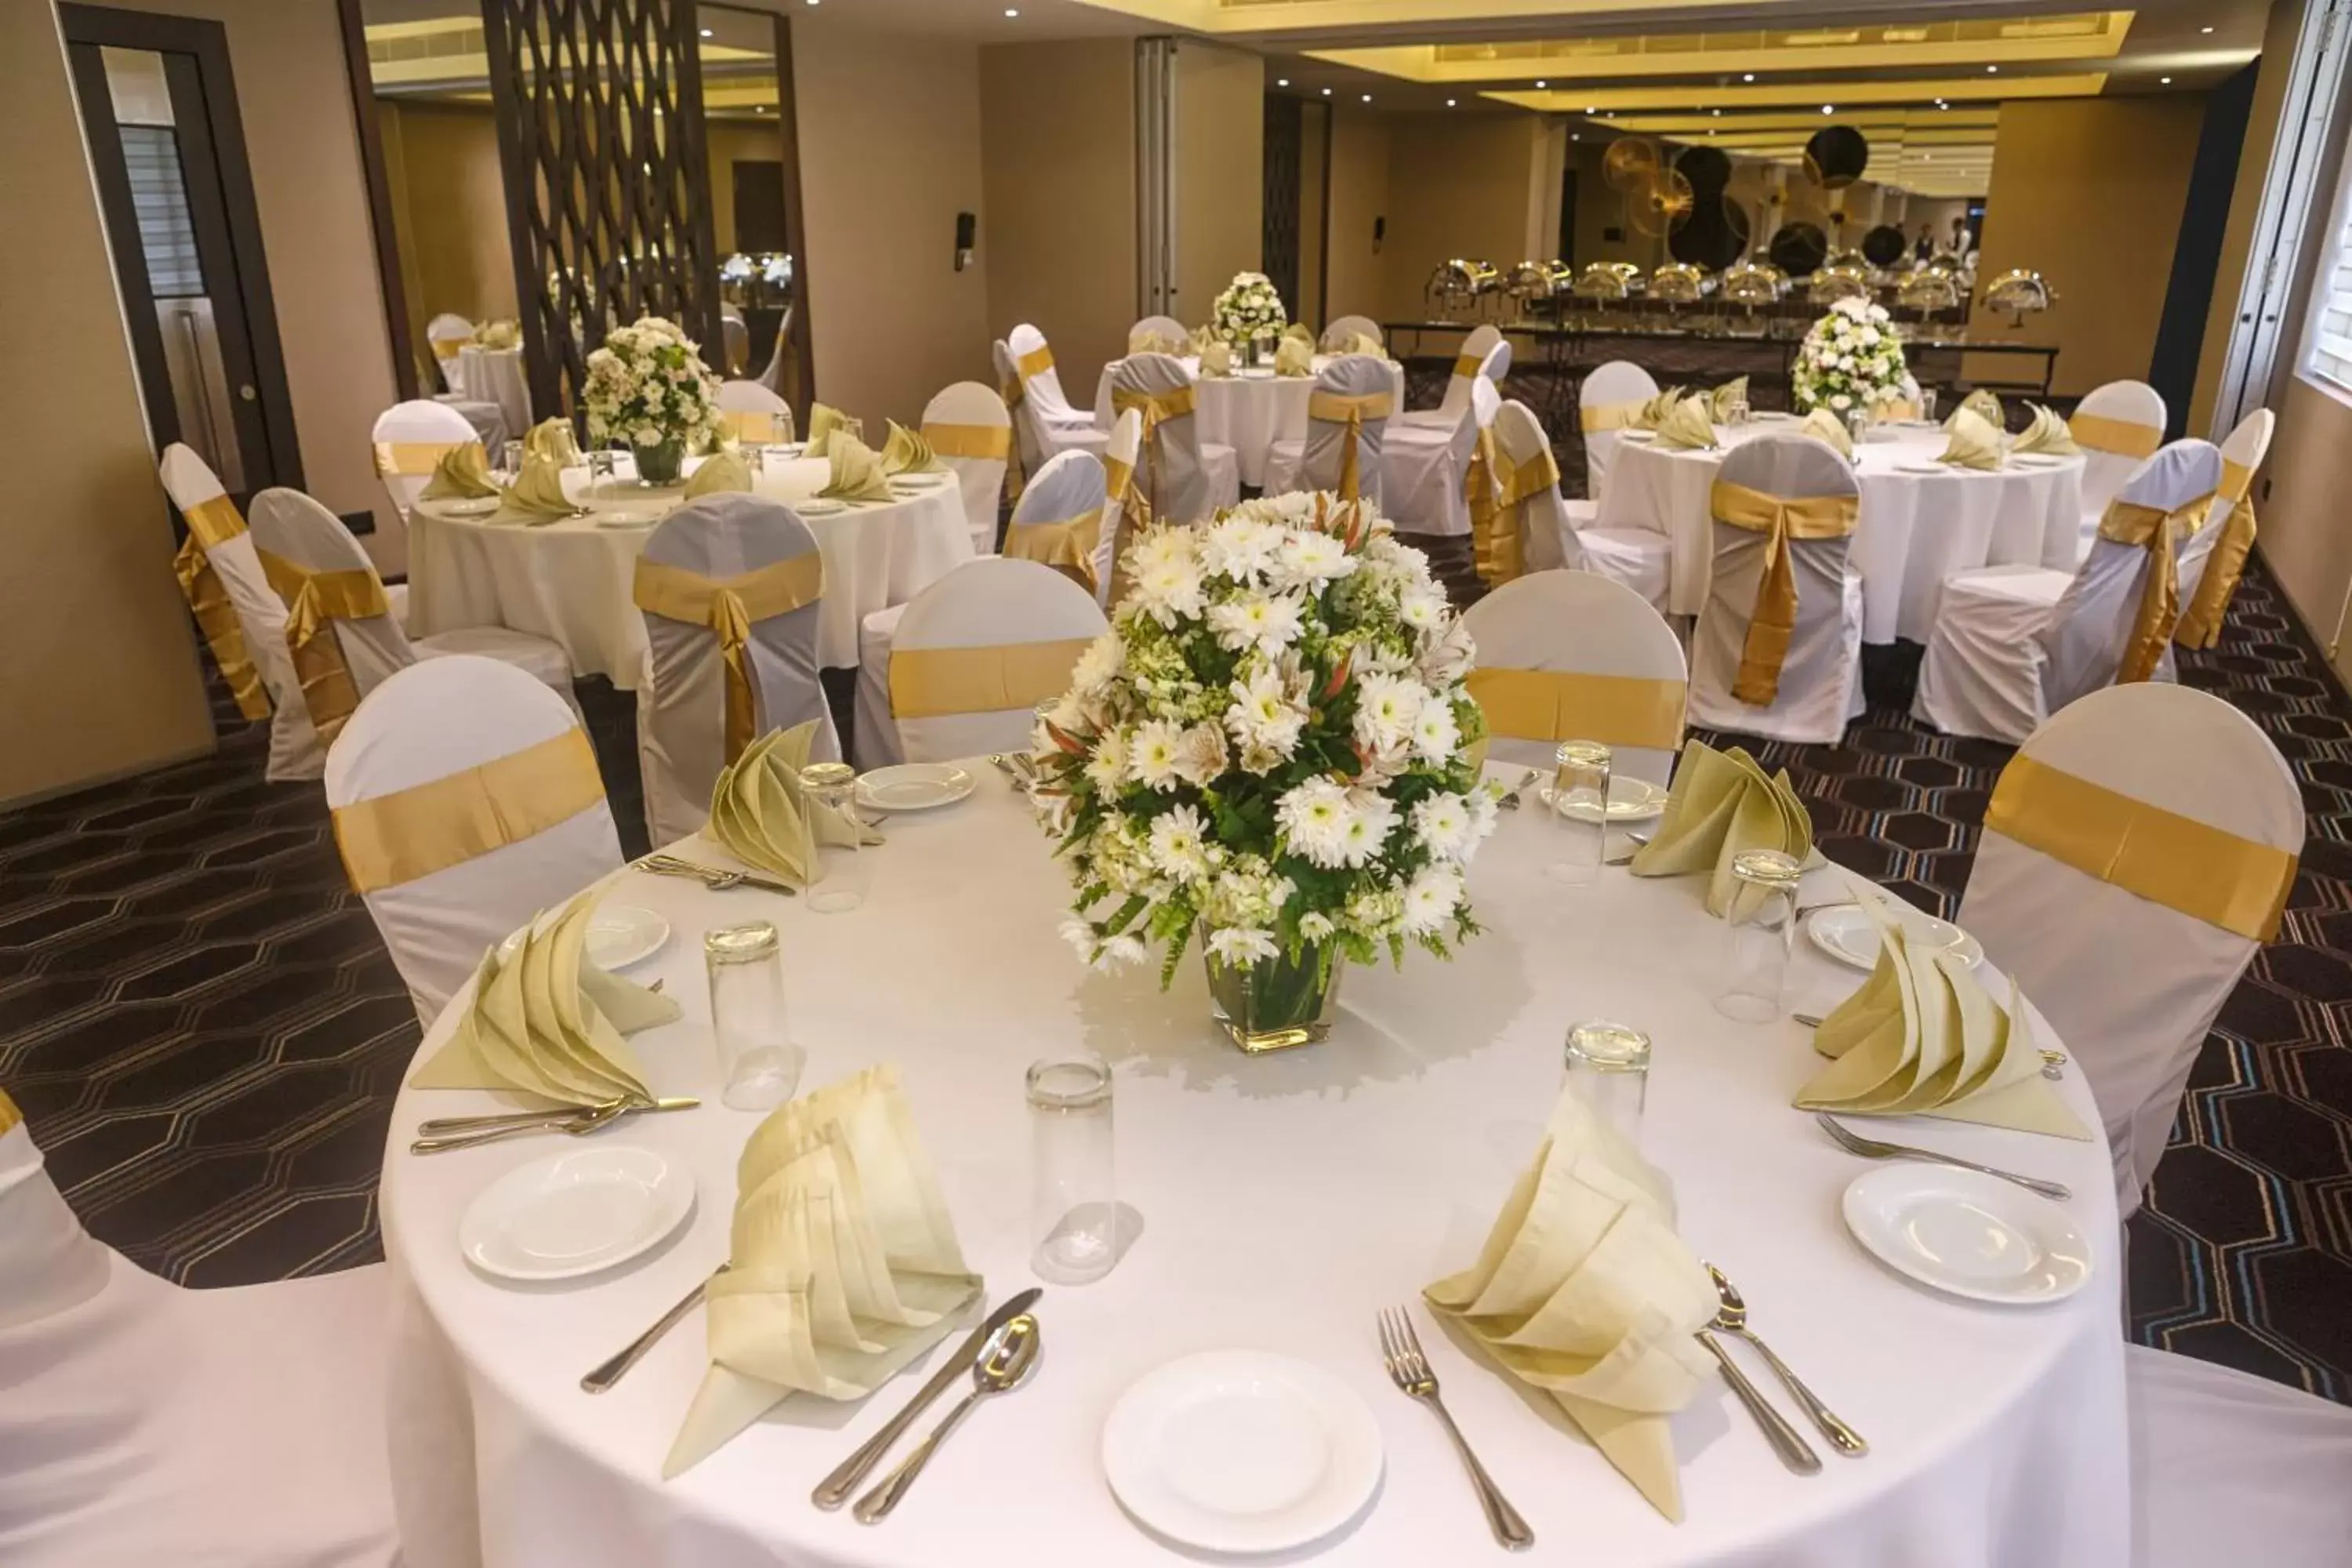 Banquet/Function facilities, Banquet Facilities in Renuka City Hotel